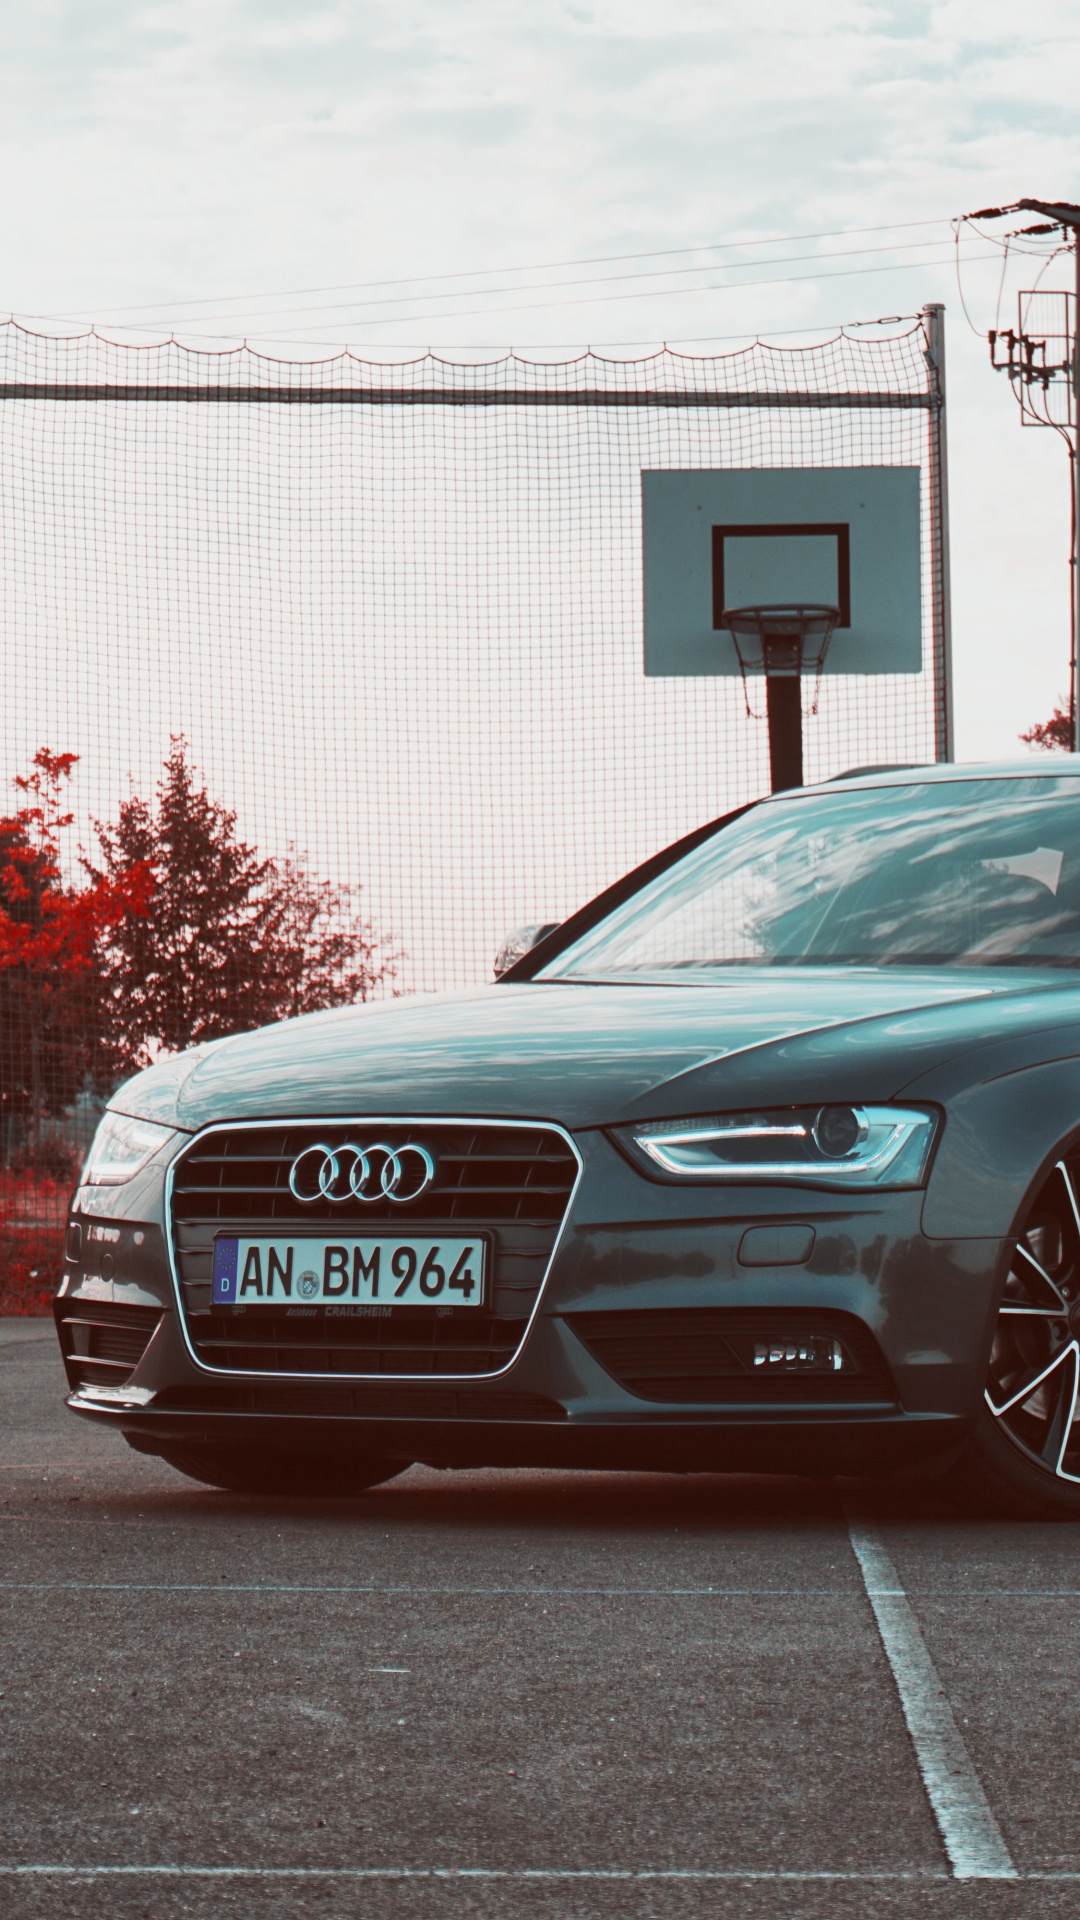 Audi Sedán Negro Estacionado en la Carretera de Hormigón Gris Durante el Día. Wallpaper in 1080x1920 Resolution